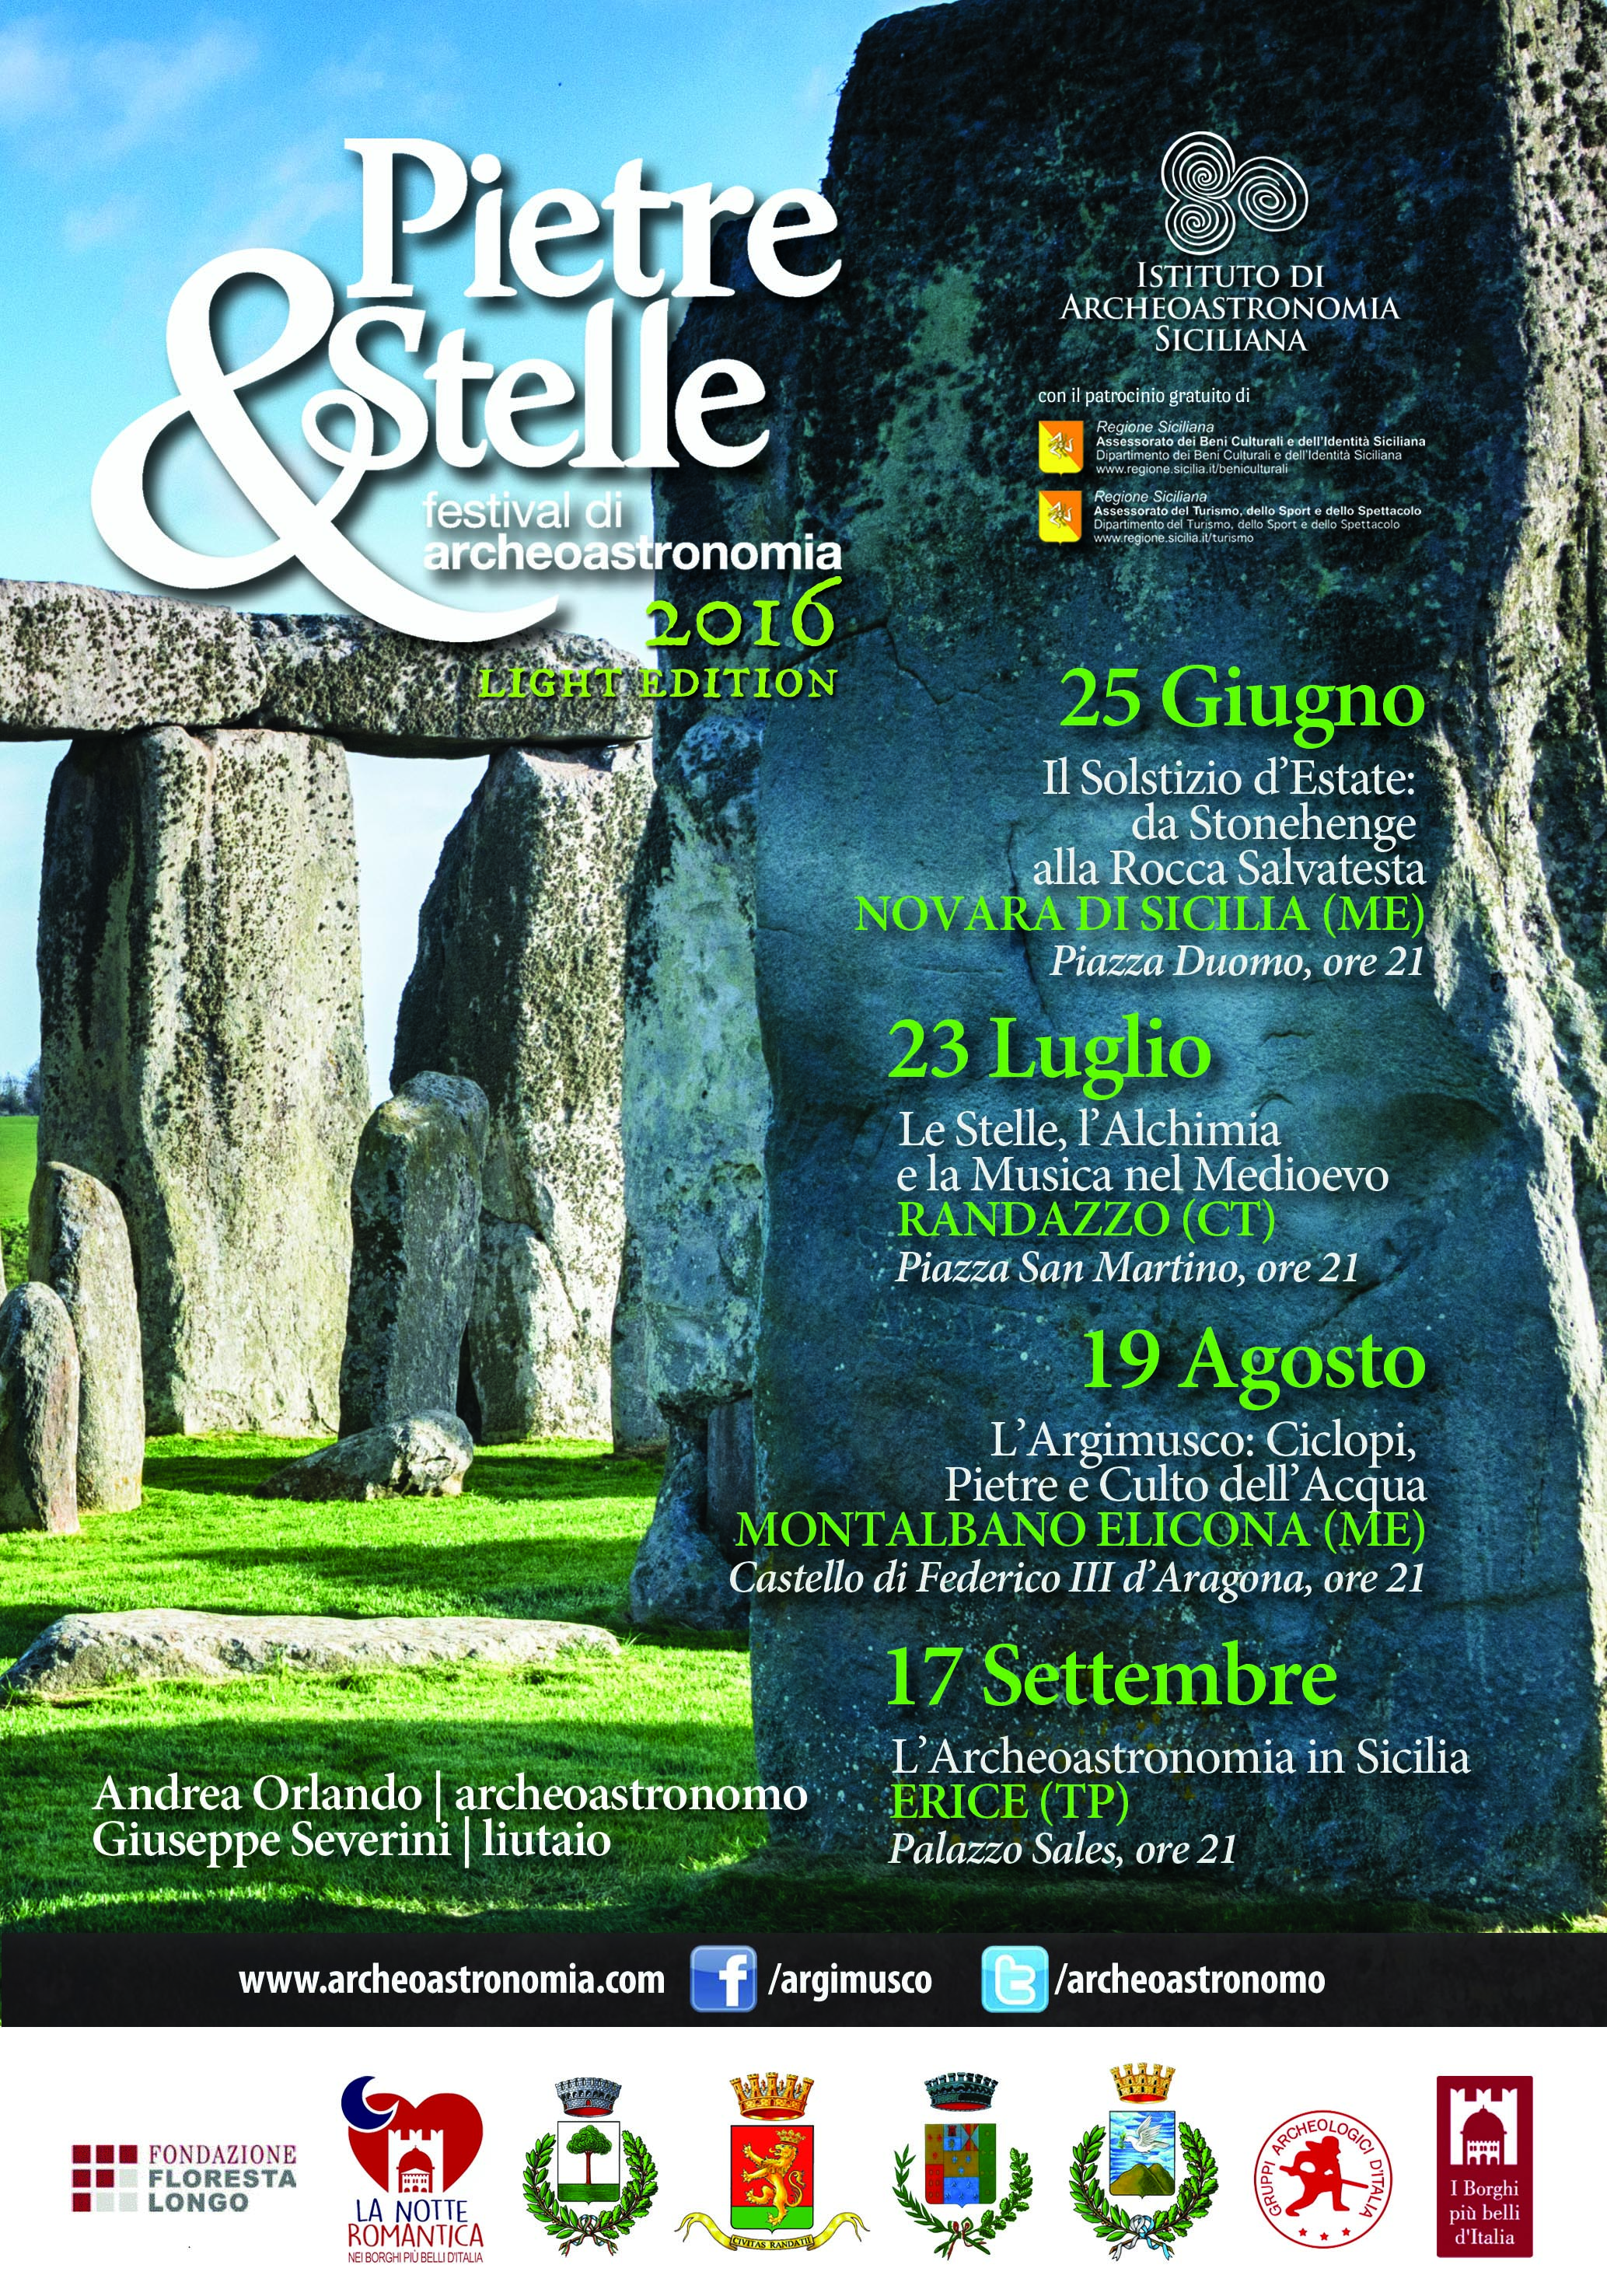 Festival di Archeoastronomia Pietre&Stelle, edizione 2016